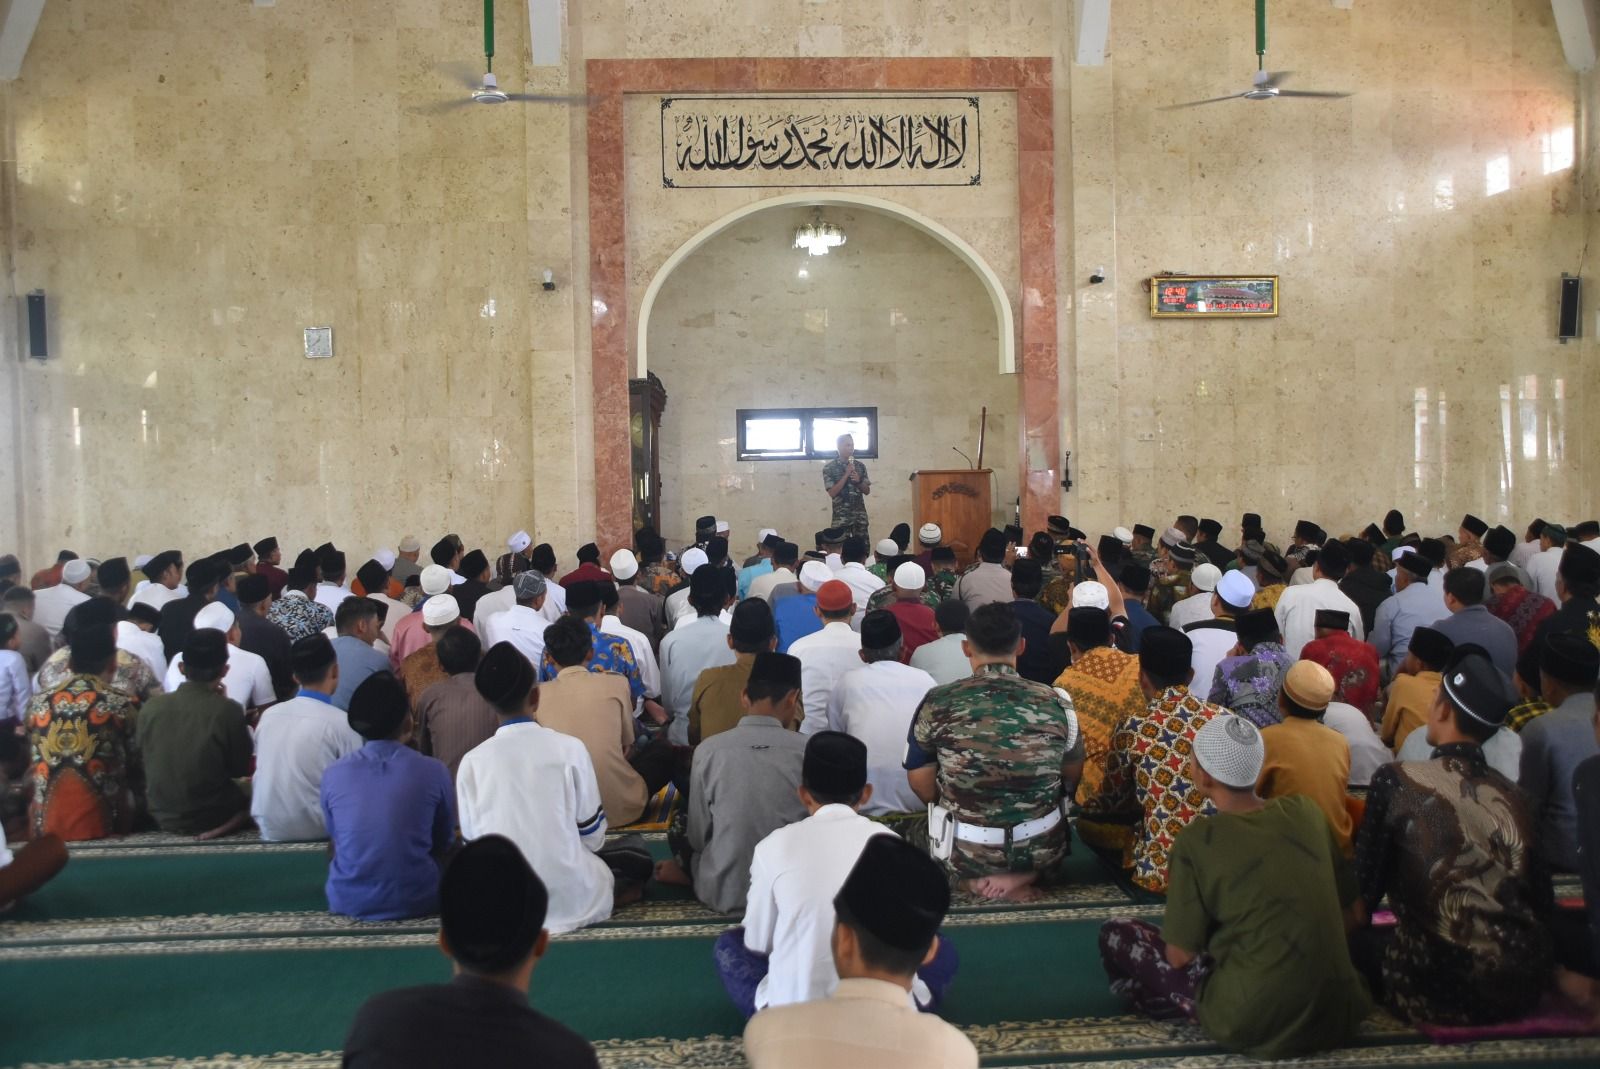 Kodim 0707 Wonosobo kunjungi Masjid Al Muhtadin Cawet dalam safari Sholat Jumat. Pendim0707